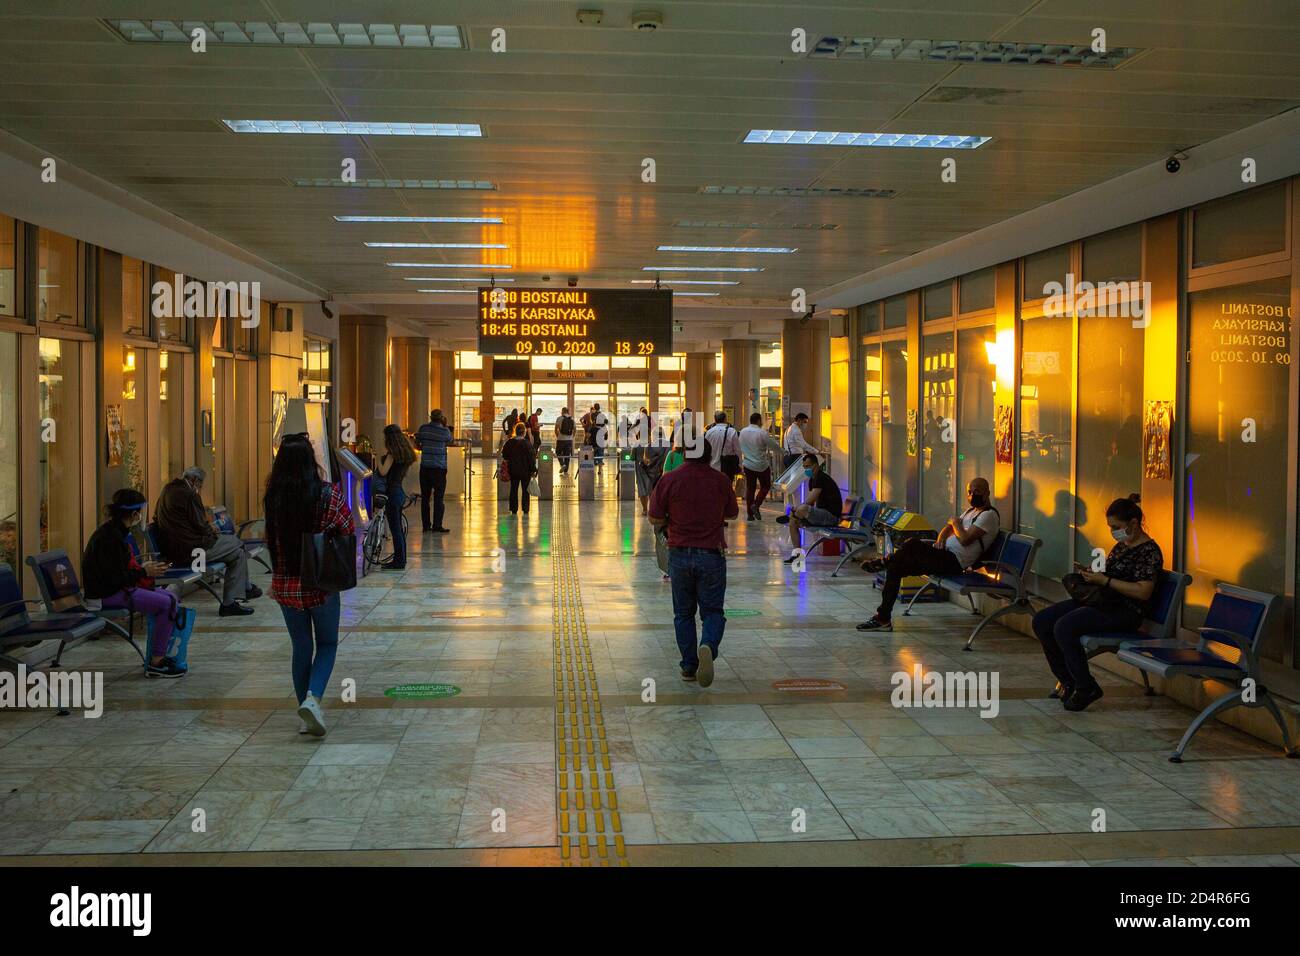 Innen- und Außenansicht des Konak Ferry Terminal, ein Passagierfähre Terminal im Zentrum von Konak, Izmir am Golf von Izmir, Türkei. Stockfoto